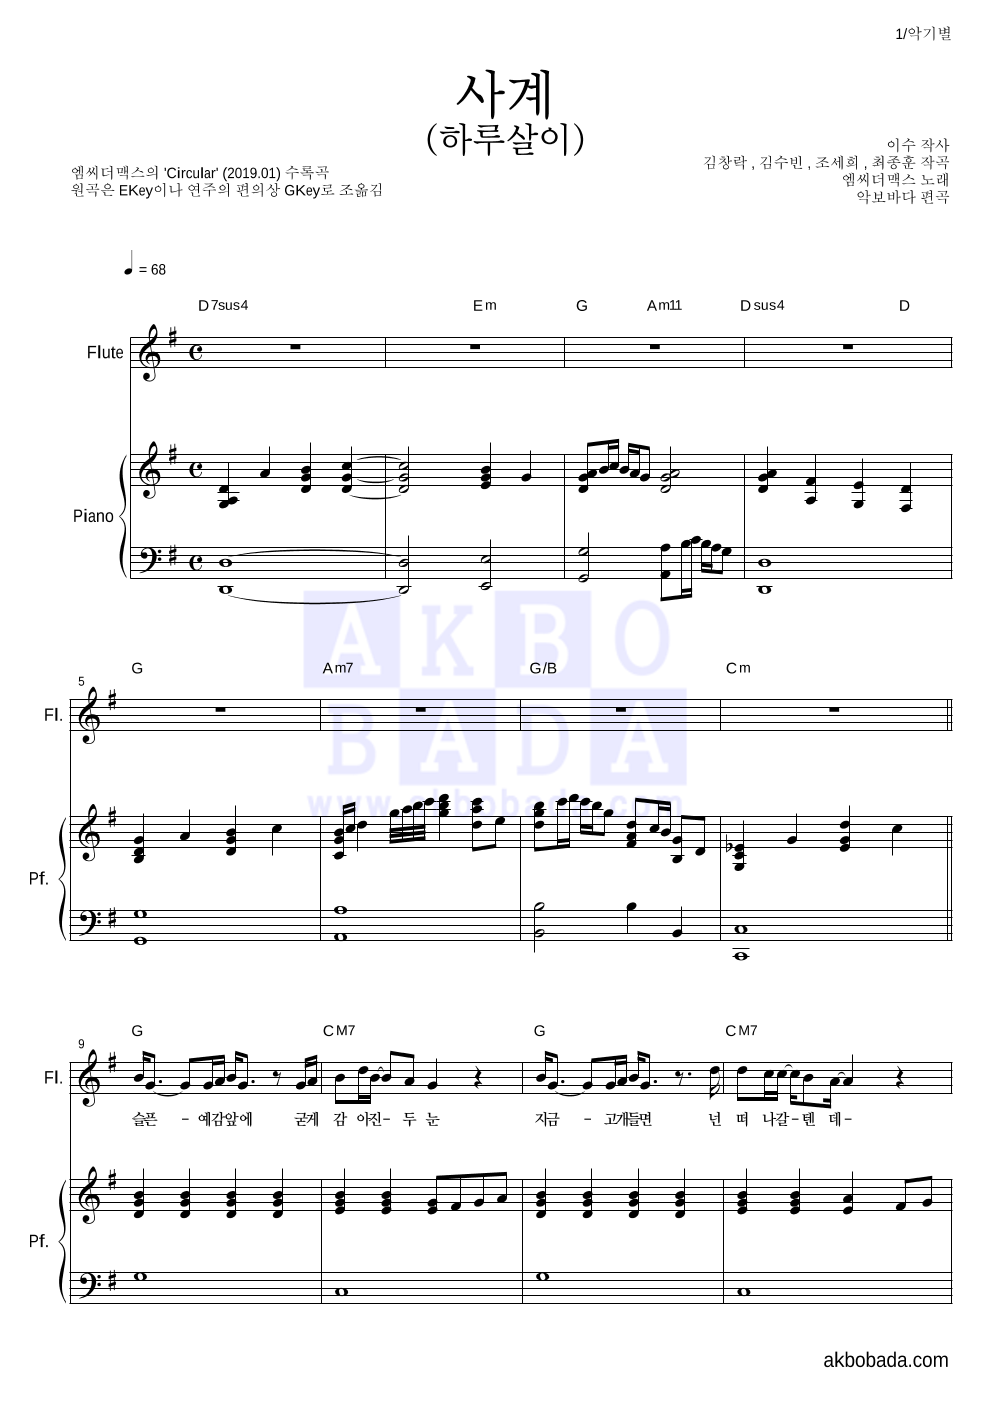 엠씨더맥스 - 사계(하루살이) 플룻&피아노 악보 